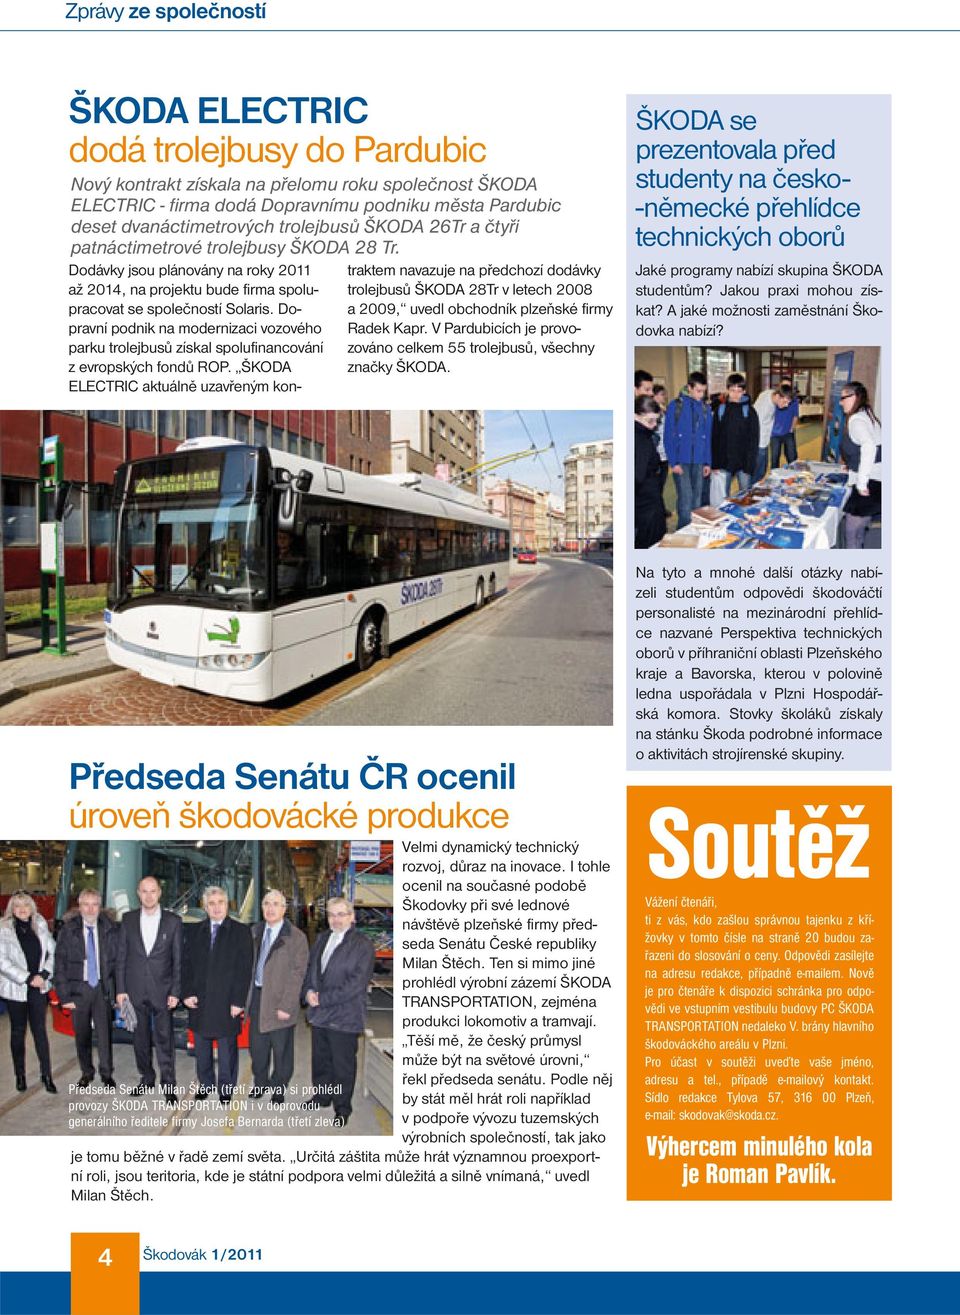 Dopravní podnik na modernizaci vozového parku trolejbusů získal spolufinancování z evropských fondů ROP.